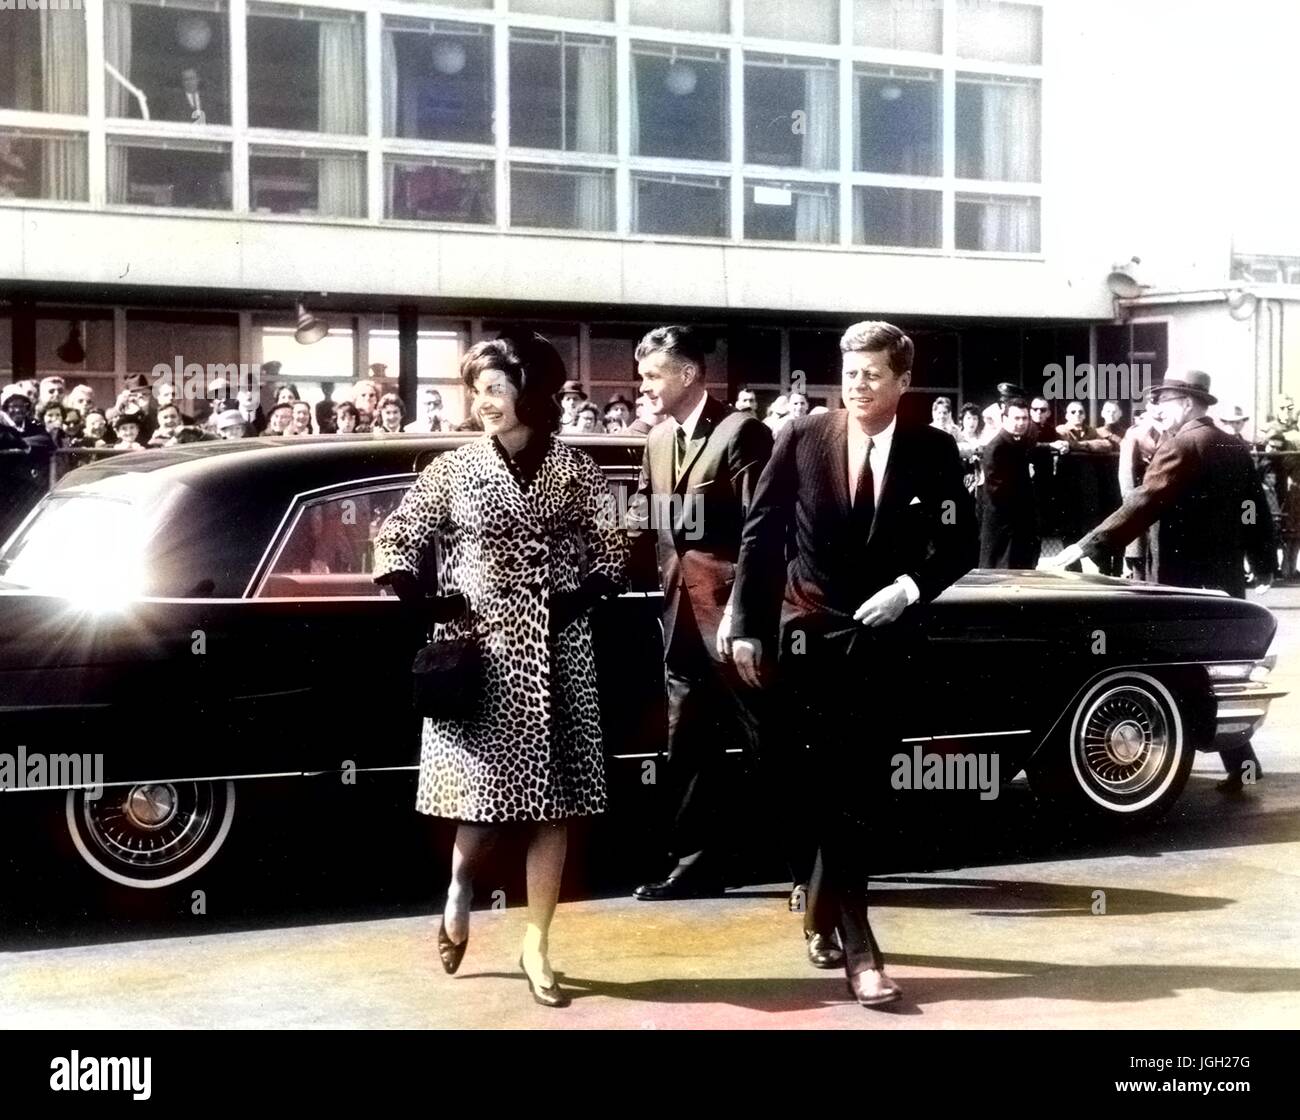 Le président des États-Unis John F. Kennedy et Jacqueline Kennedy la sortie d'une automobile, 1961. Avec la permission de Abbie Row/Service national des parcs. Remarque : l'image a été colorisée numériquement à l'aide d'un processus moderne. Les couleurs peuvent ne pas être exacts à l'autre. Banque D'Images